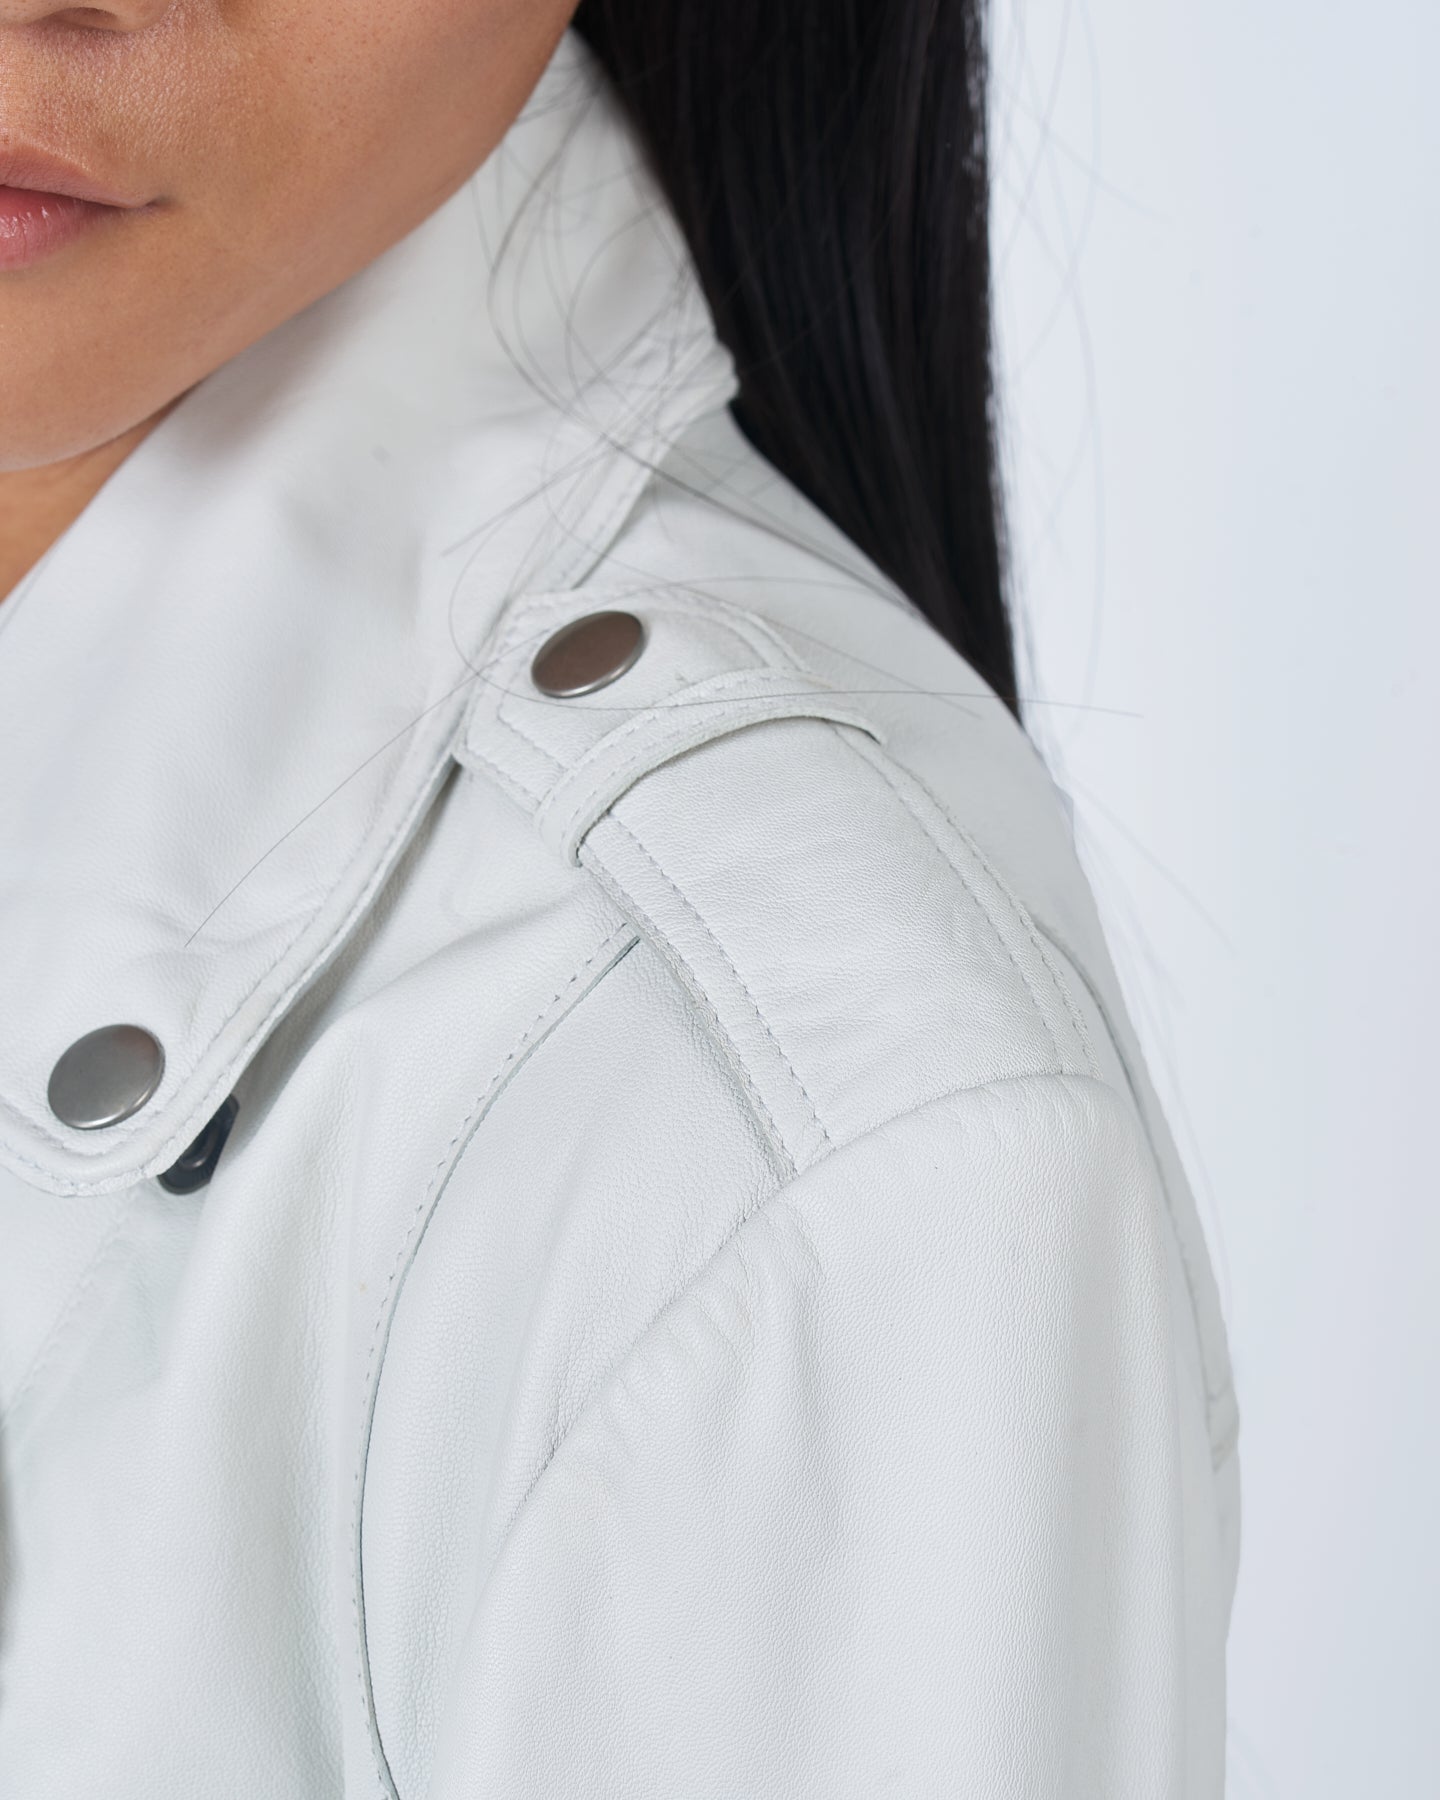 Jakett Josey Vintage Leather Jacket White – jakett